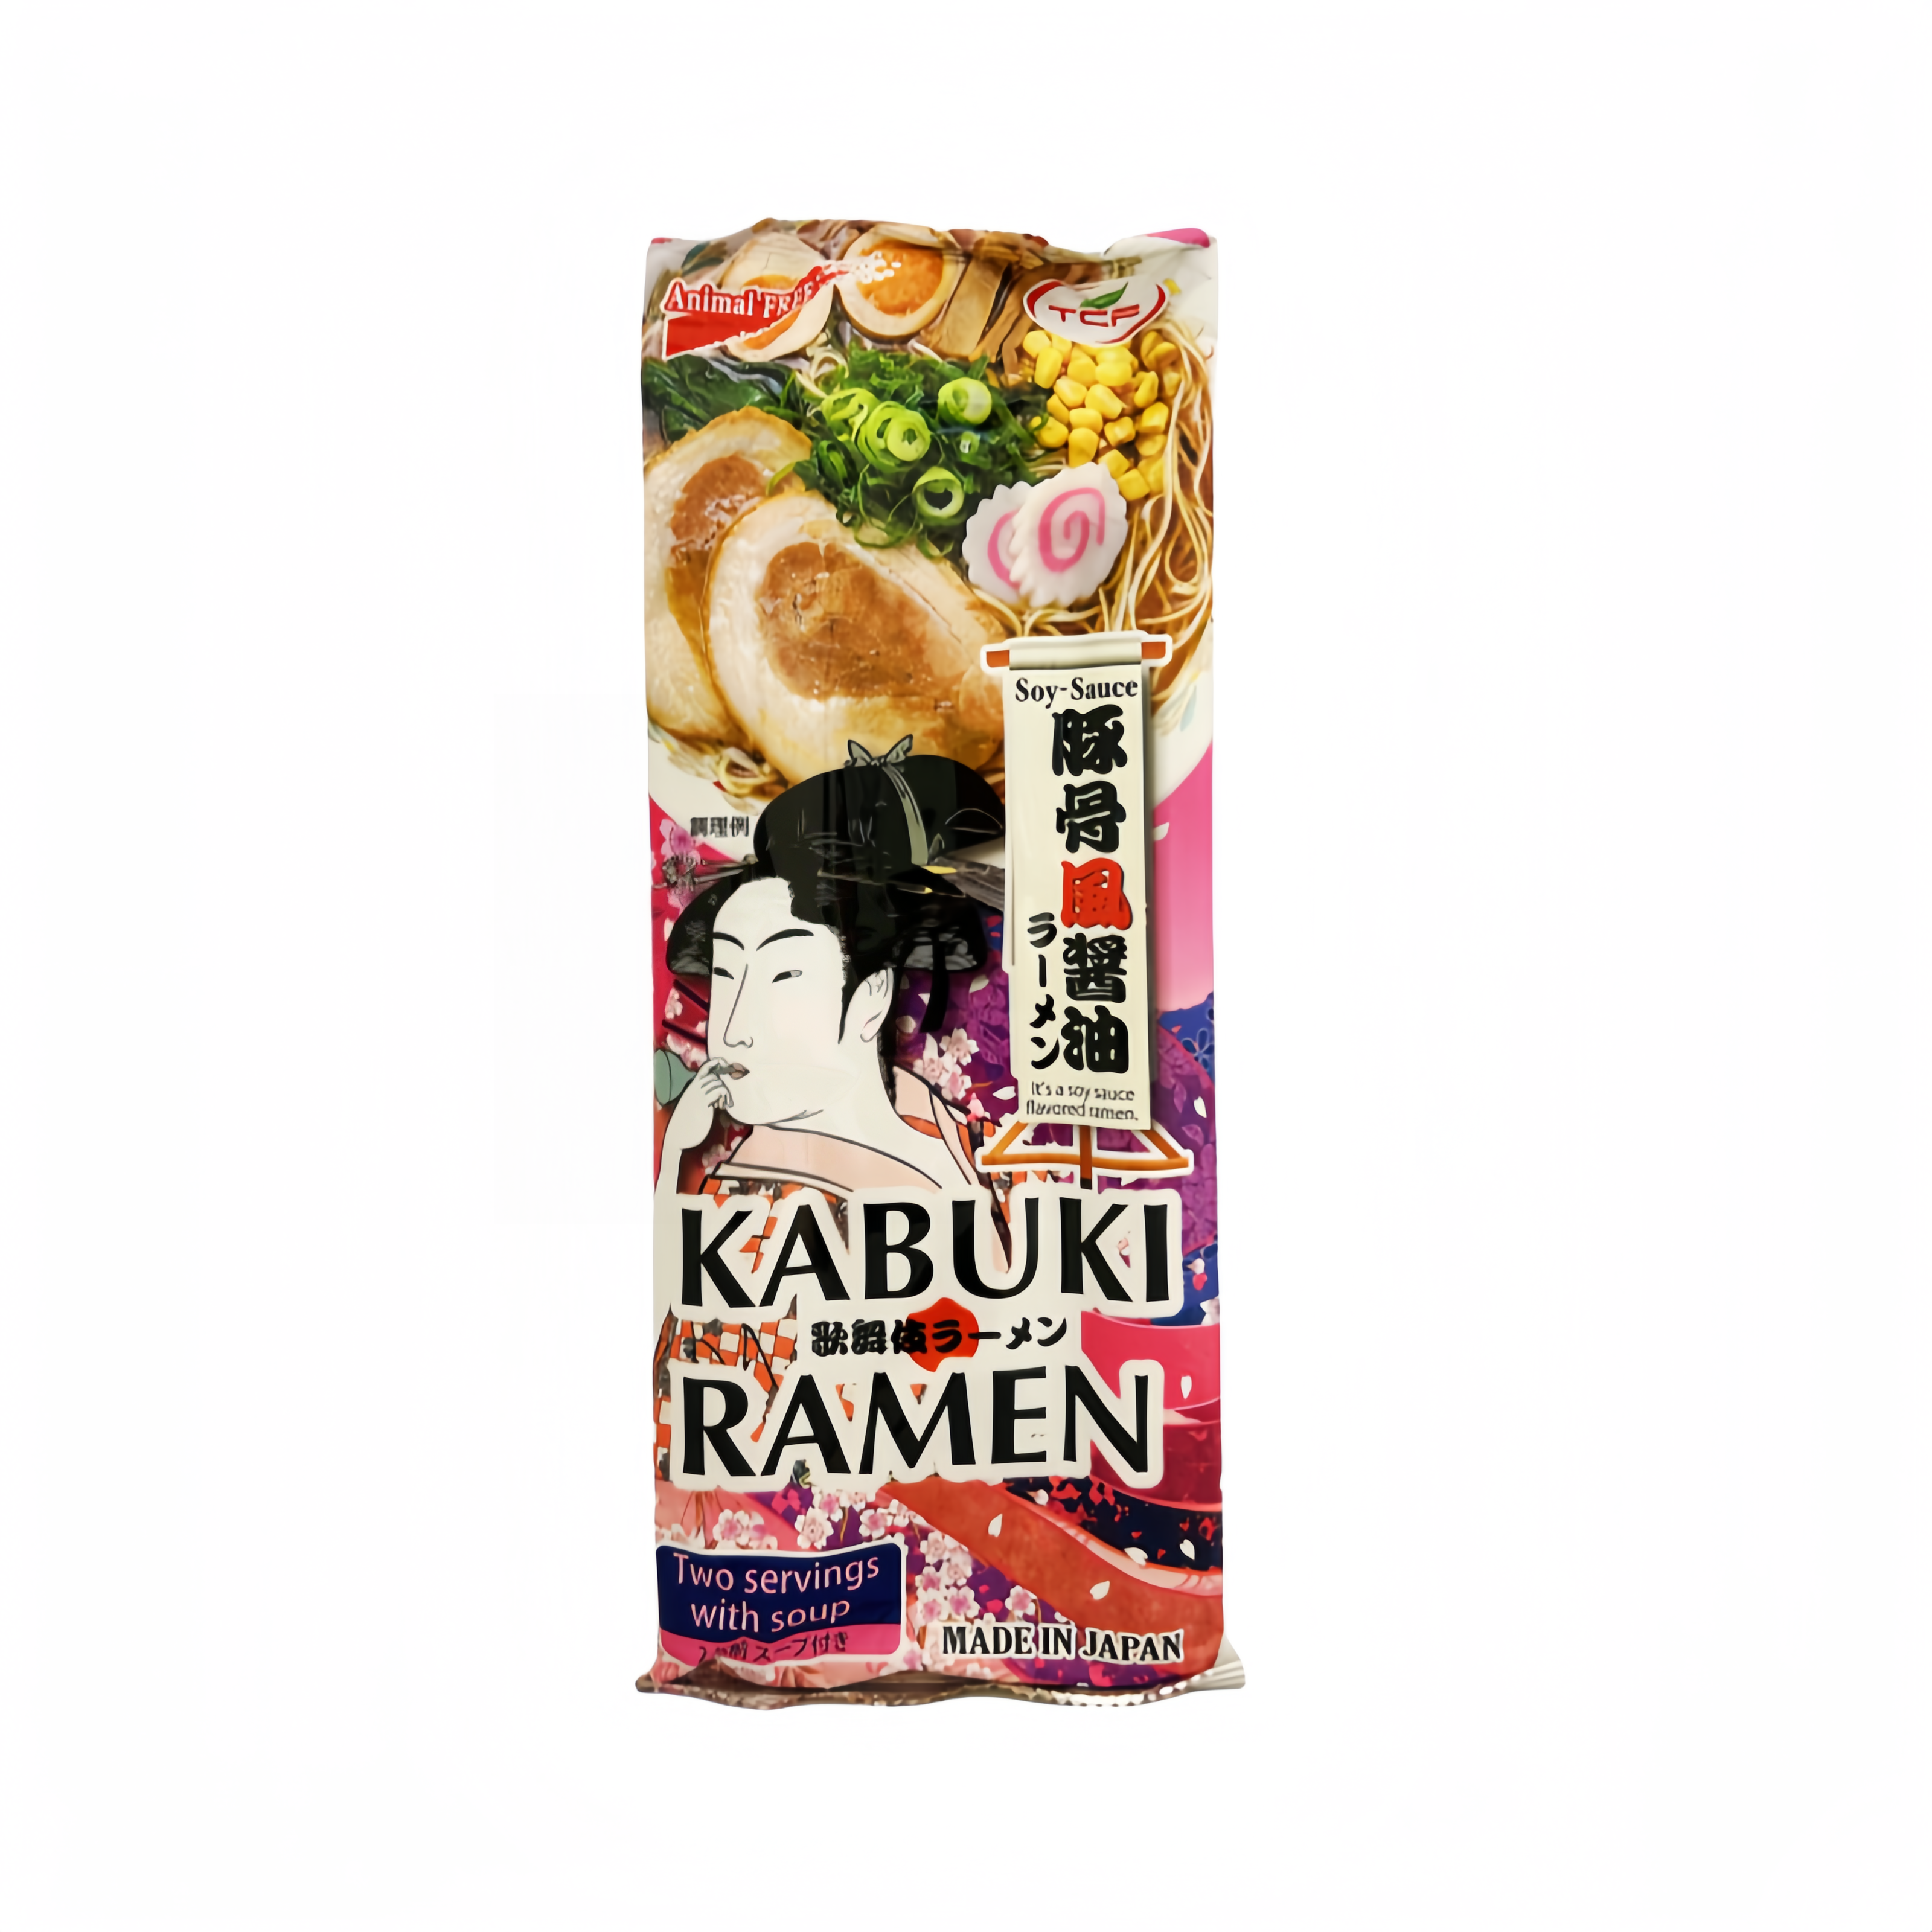 拉面 Kabuki 酱油风味 190g TCF 日本